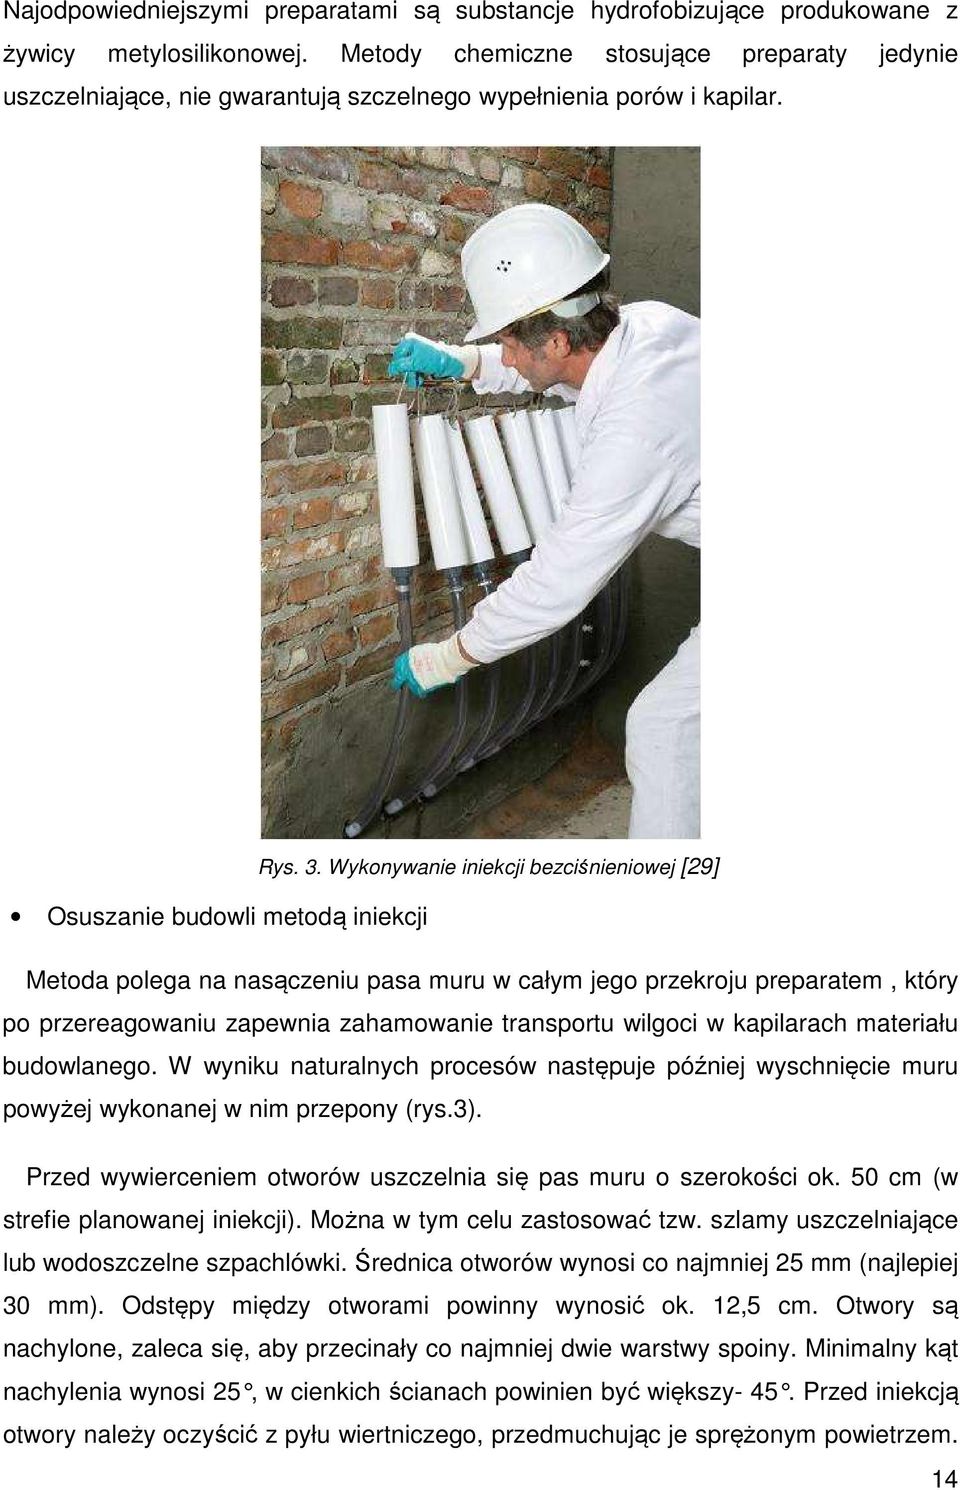 Wykonywanie iniekcji bezciśnieniowej [29] Osuszanie budowli metodą iniekcji Metoda polega na nasączeniu pasa muru w całym jego przekroju preparatem, który po przereagowaniu zapewnia zahamowanie